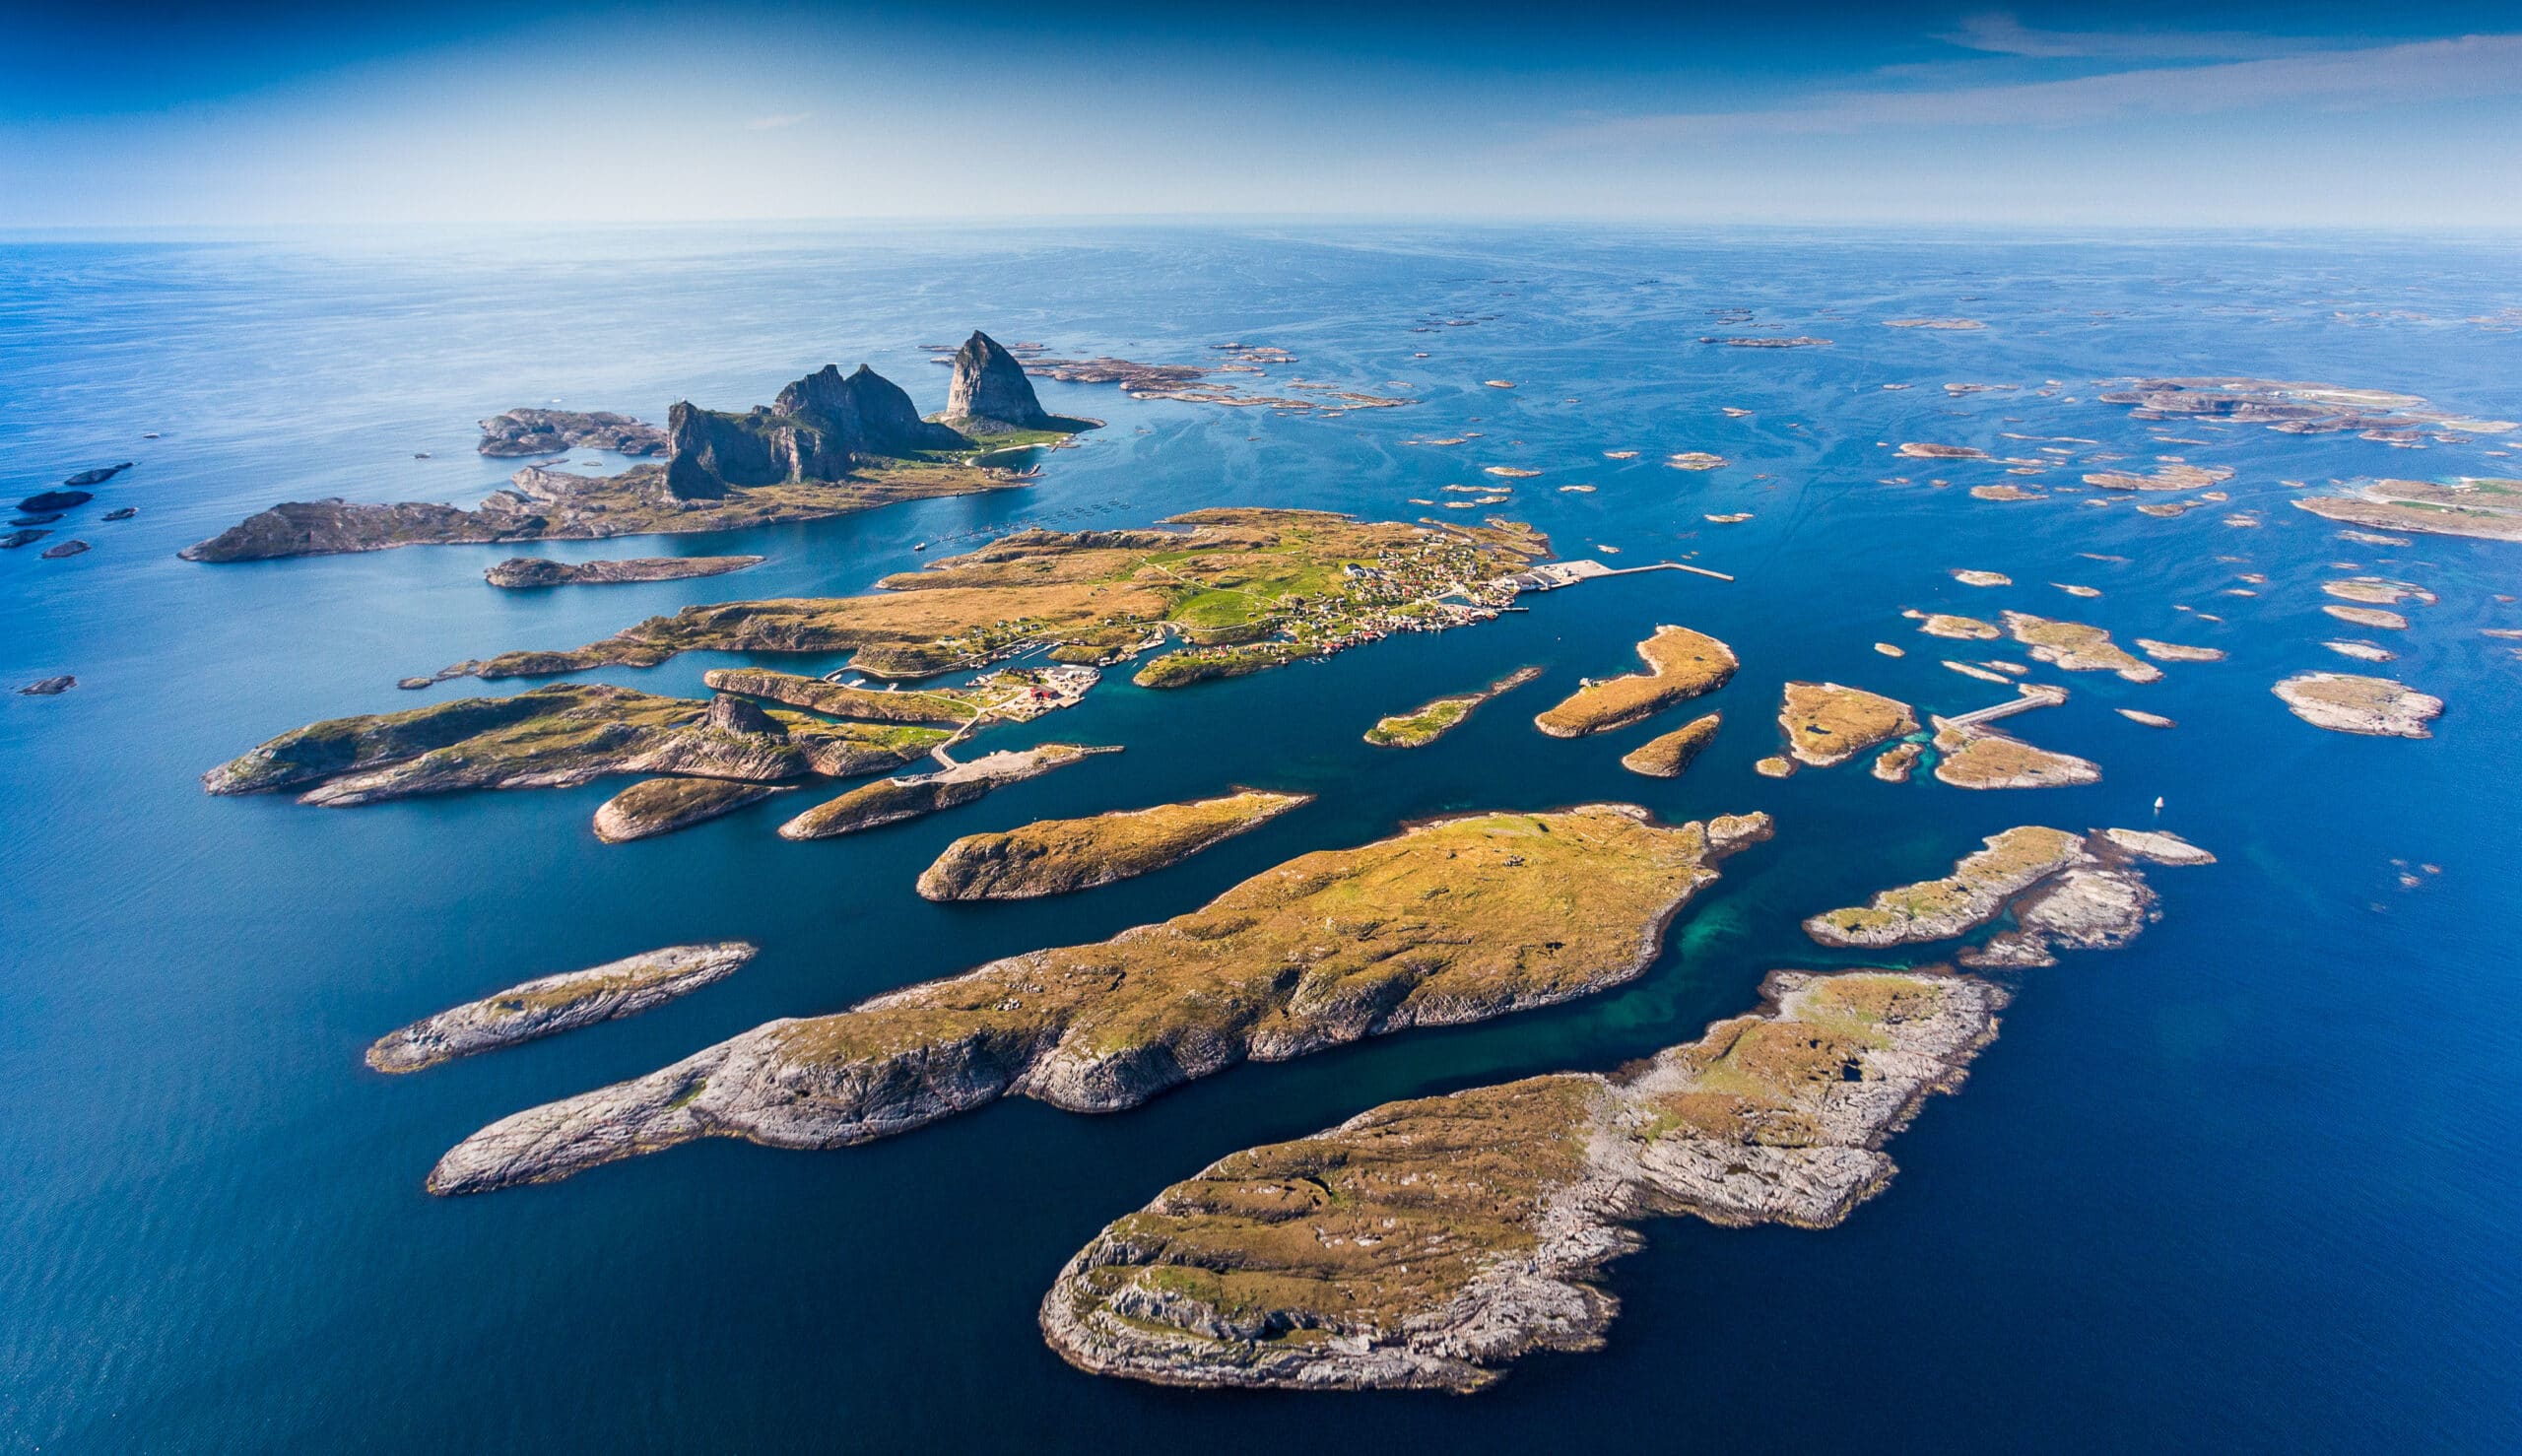 Træna - utallige øyer uti havet utenfor Helgelandskysten